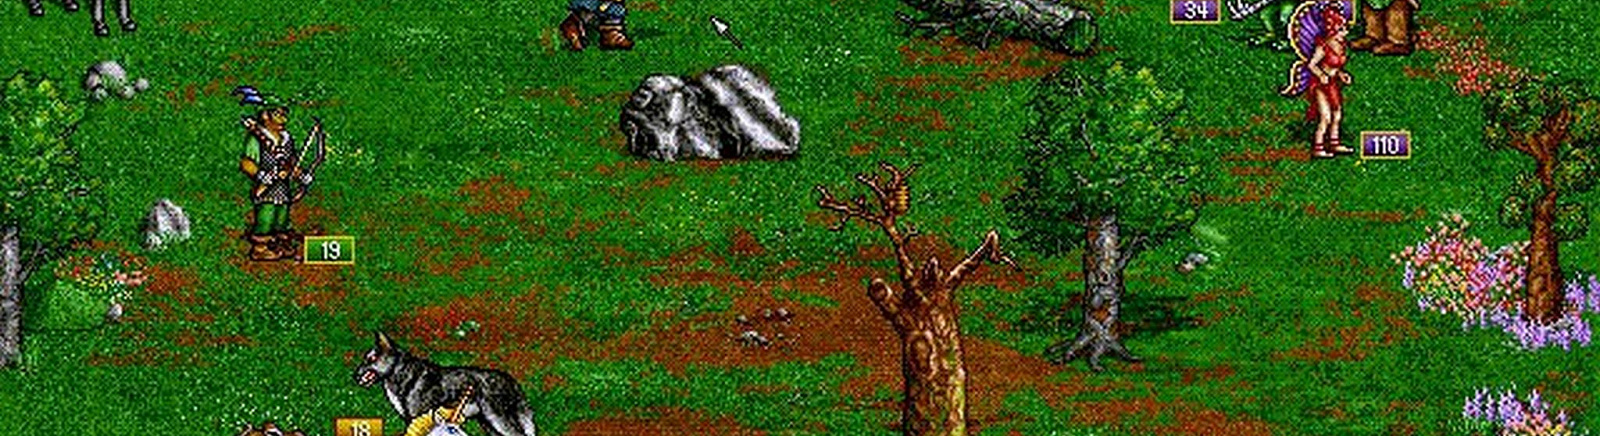 Дата выхода Heroes of Might and Magic 2: The Price of Loyalty  на PC, DOS и Acorn 32-bit в России и во всем мире